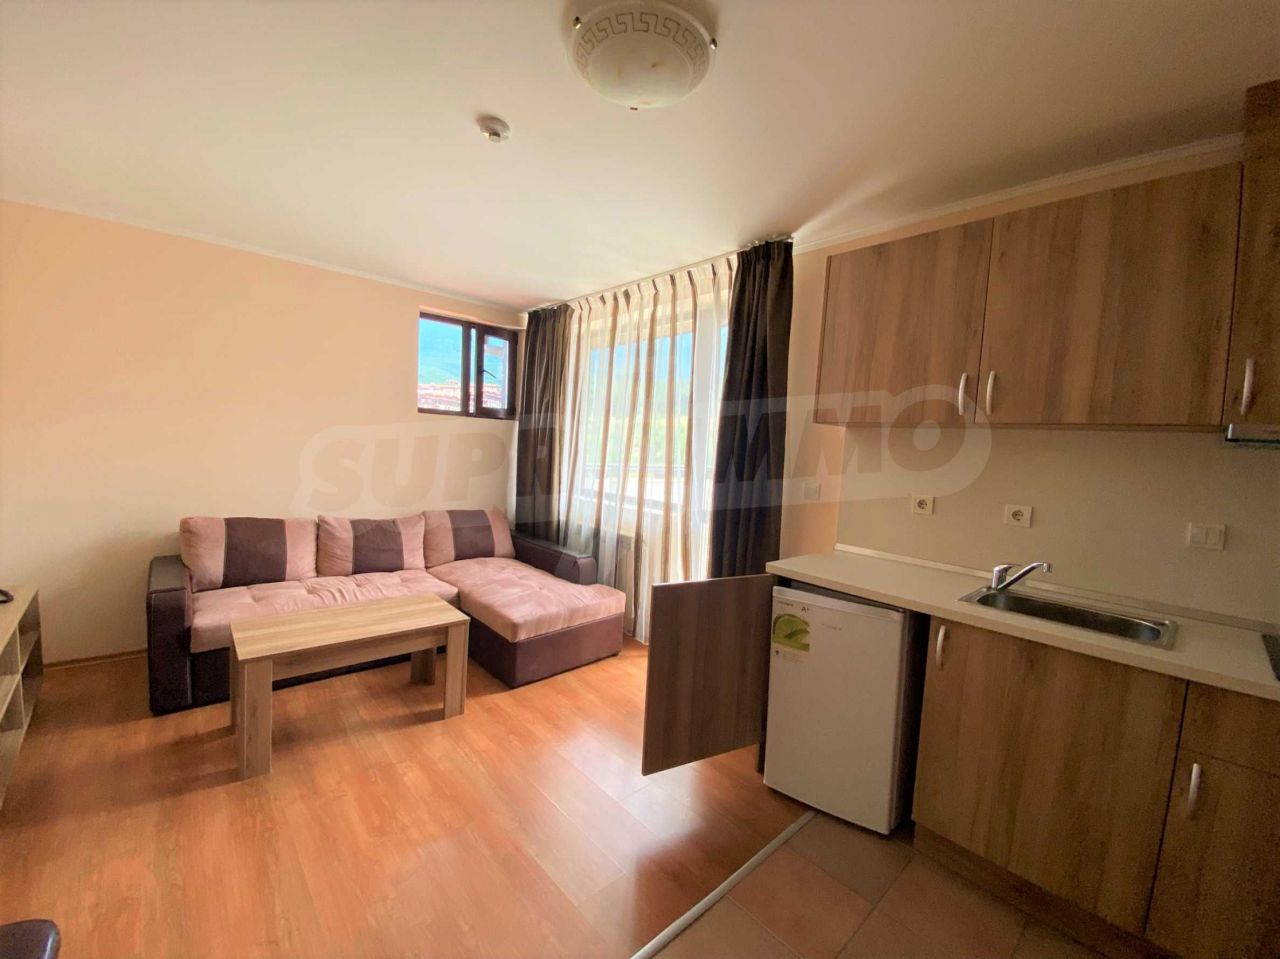 Apartment in Bansko, Bulgaria, 68.25 sq.m - picture 1